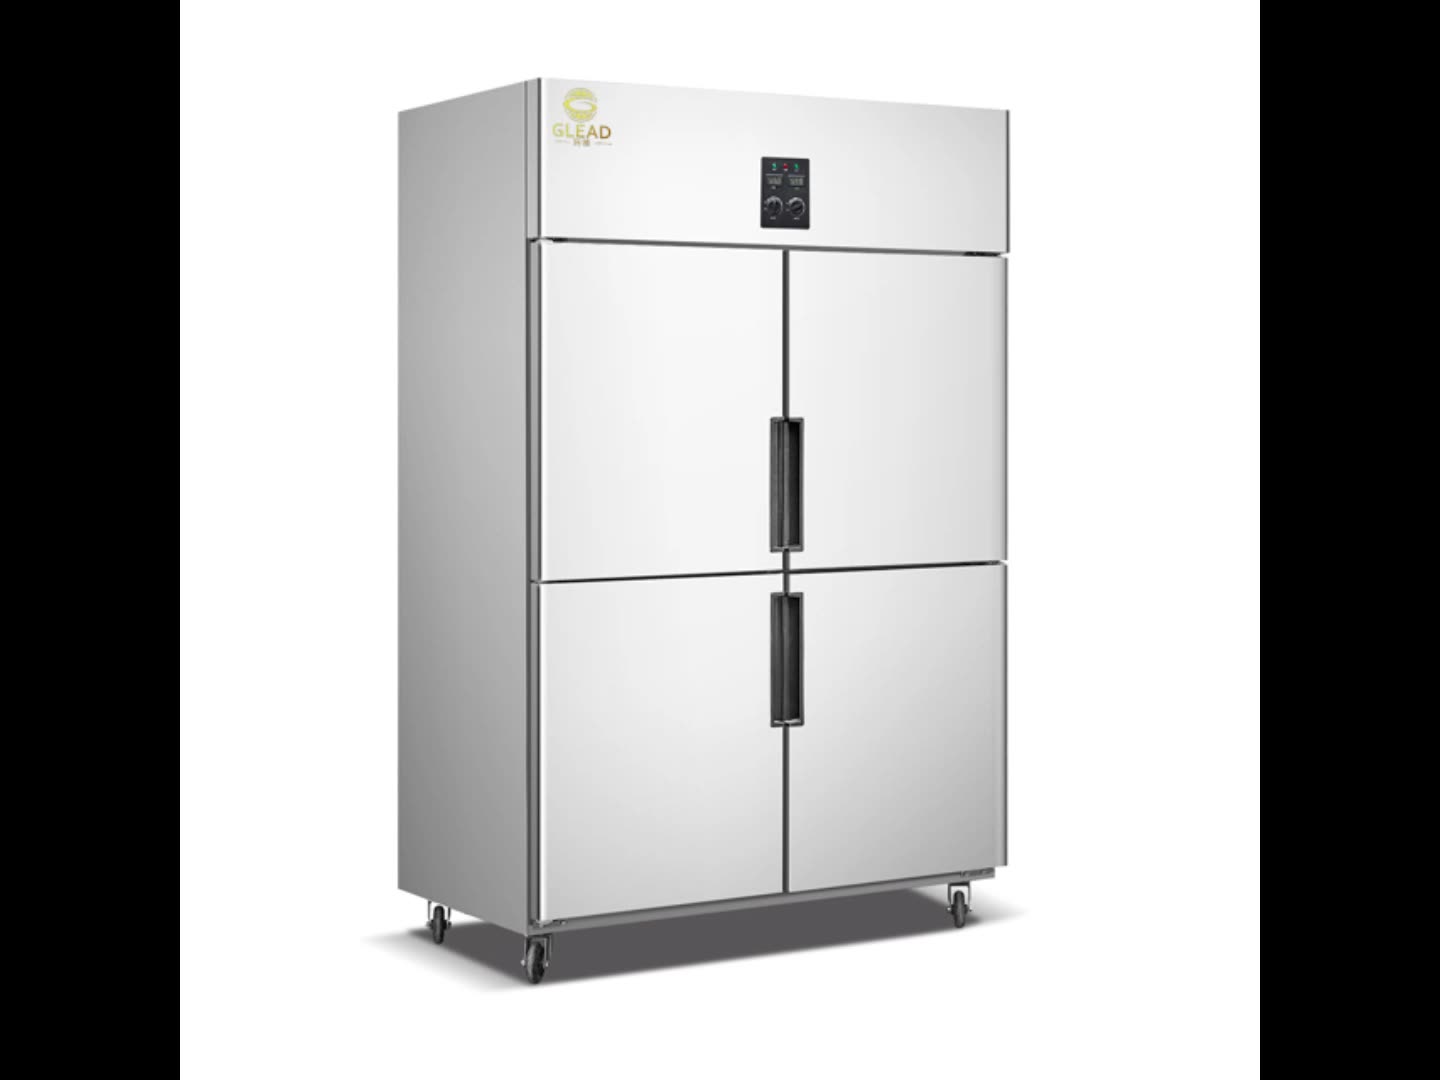 Kommerzielle Vier-Door-Küchenschrank Edelstahl Kühlschränke Küchenausrüstung1